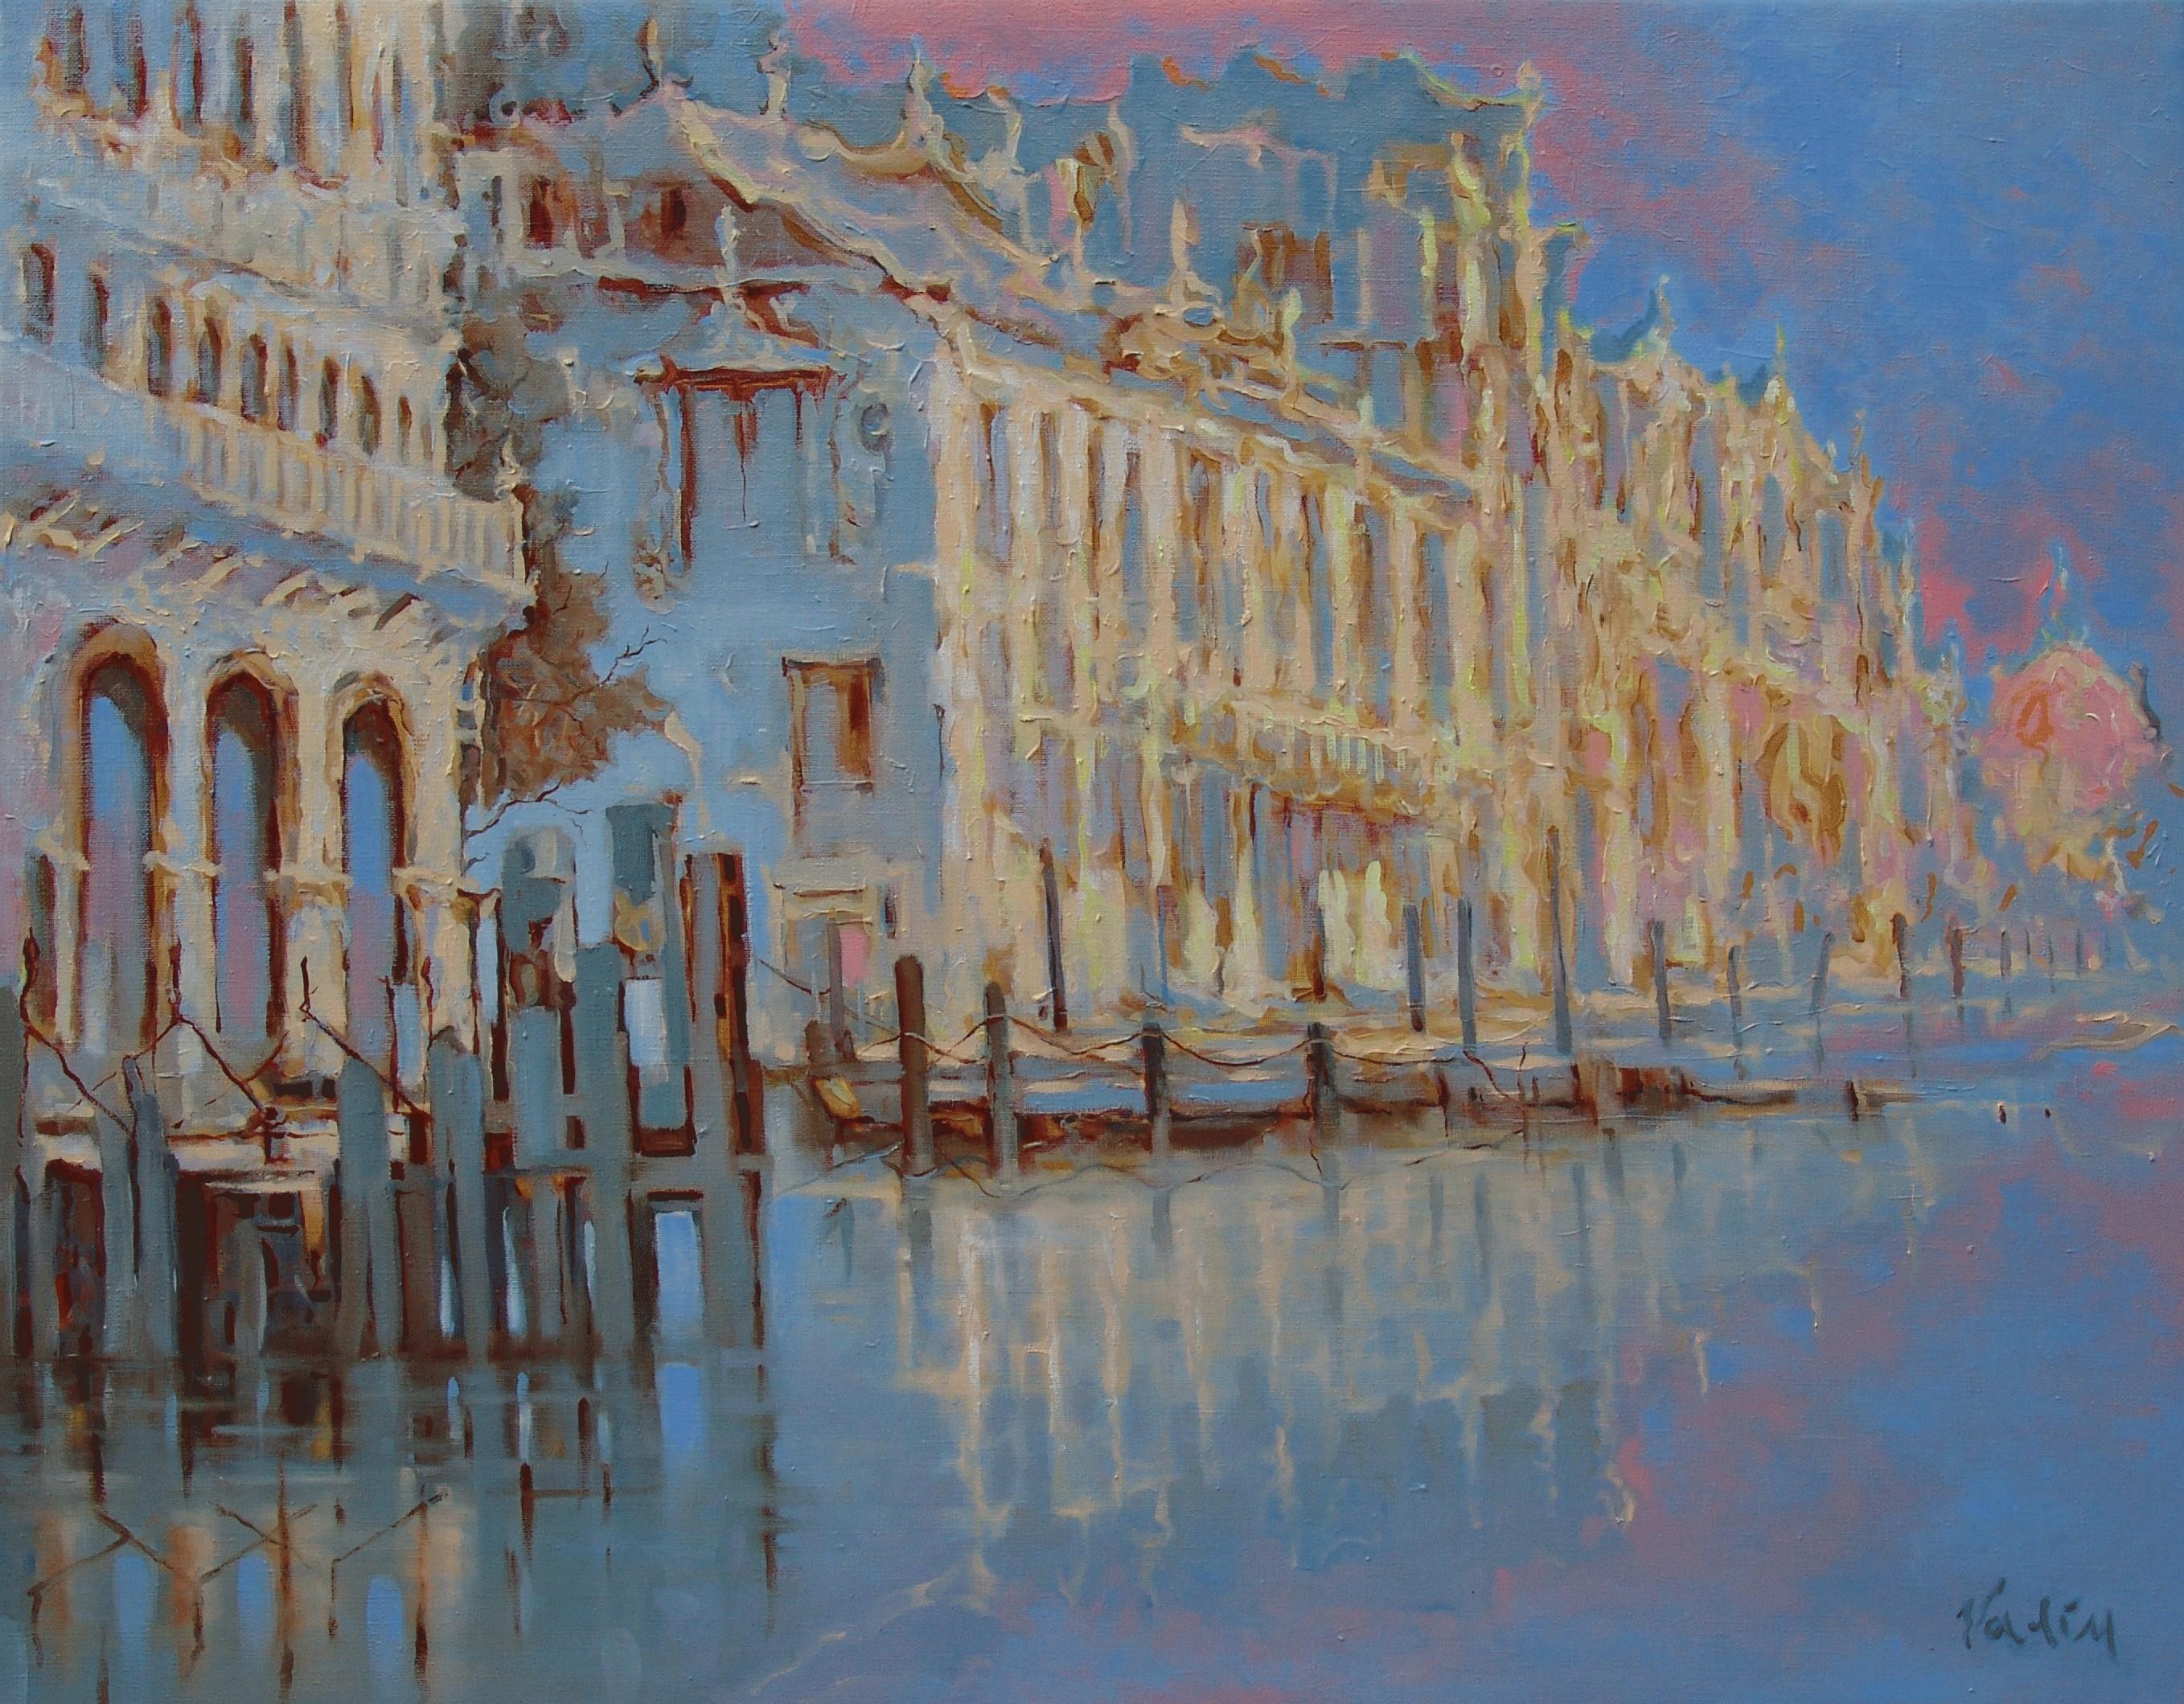 Venise (Venise). Huile sur toile, 73x93 cm